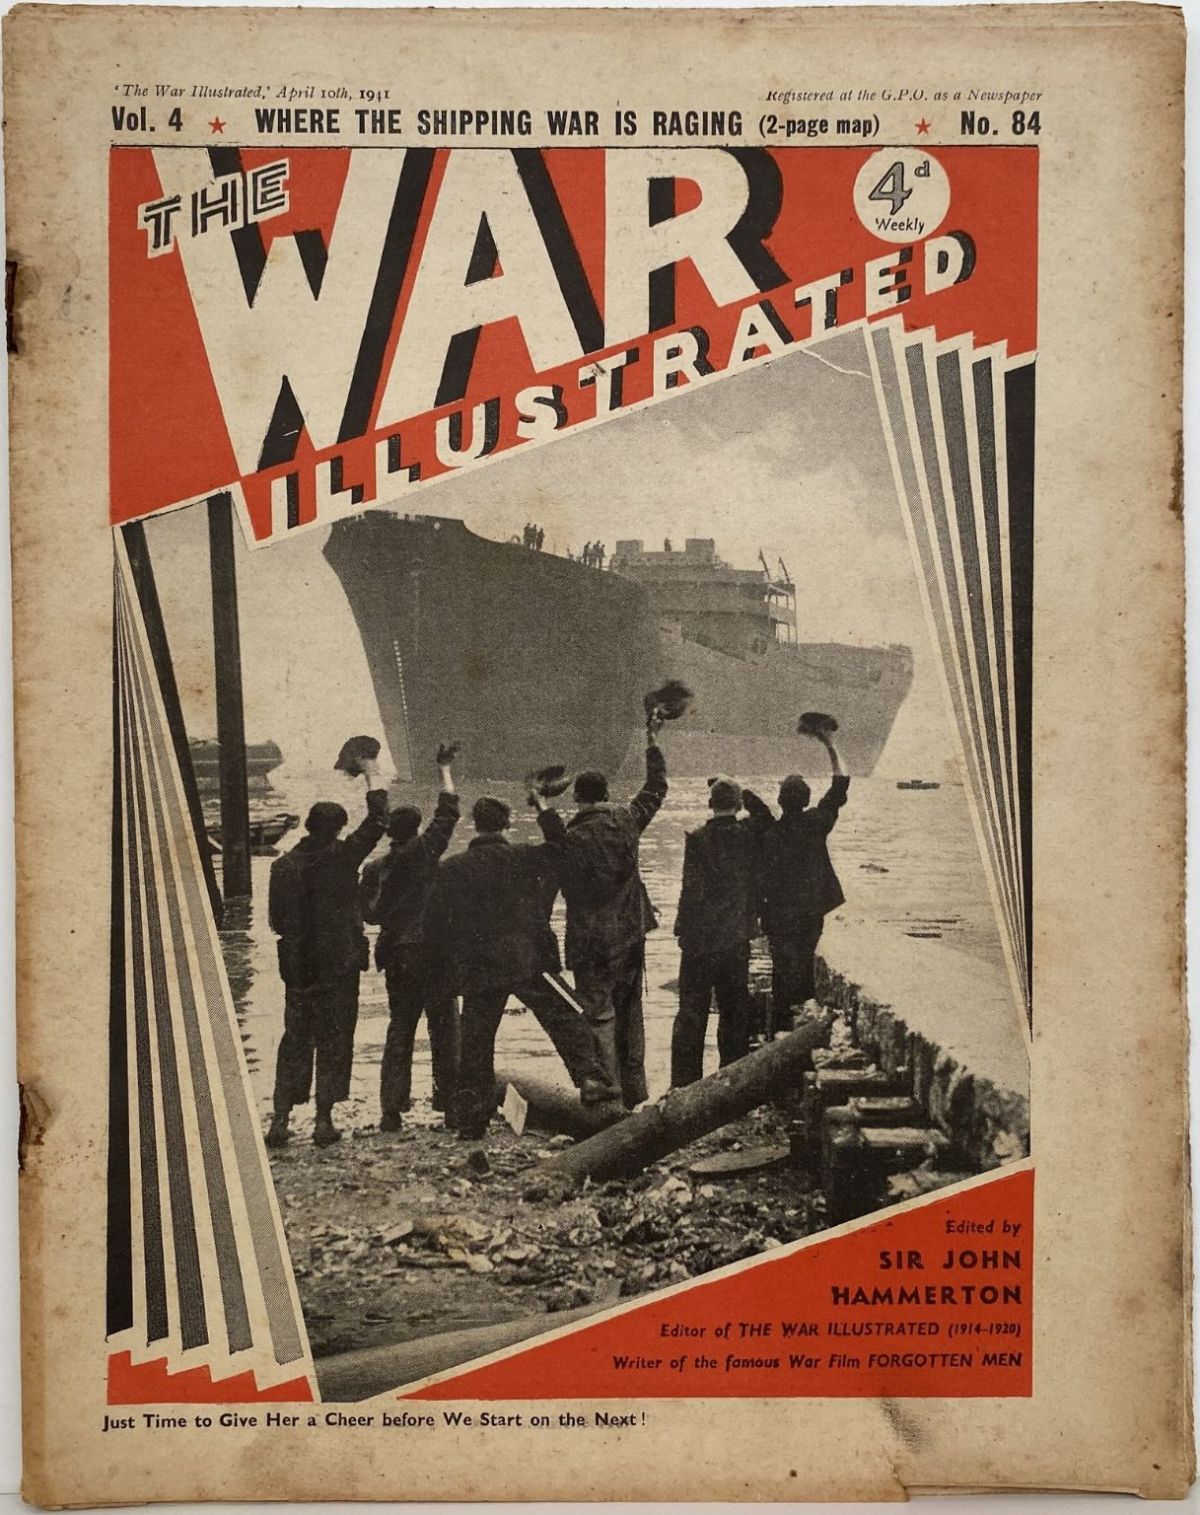 THE WAR ILLUSTRATED - Vol 4, No 84, 10th April 1941